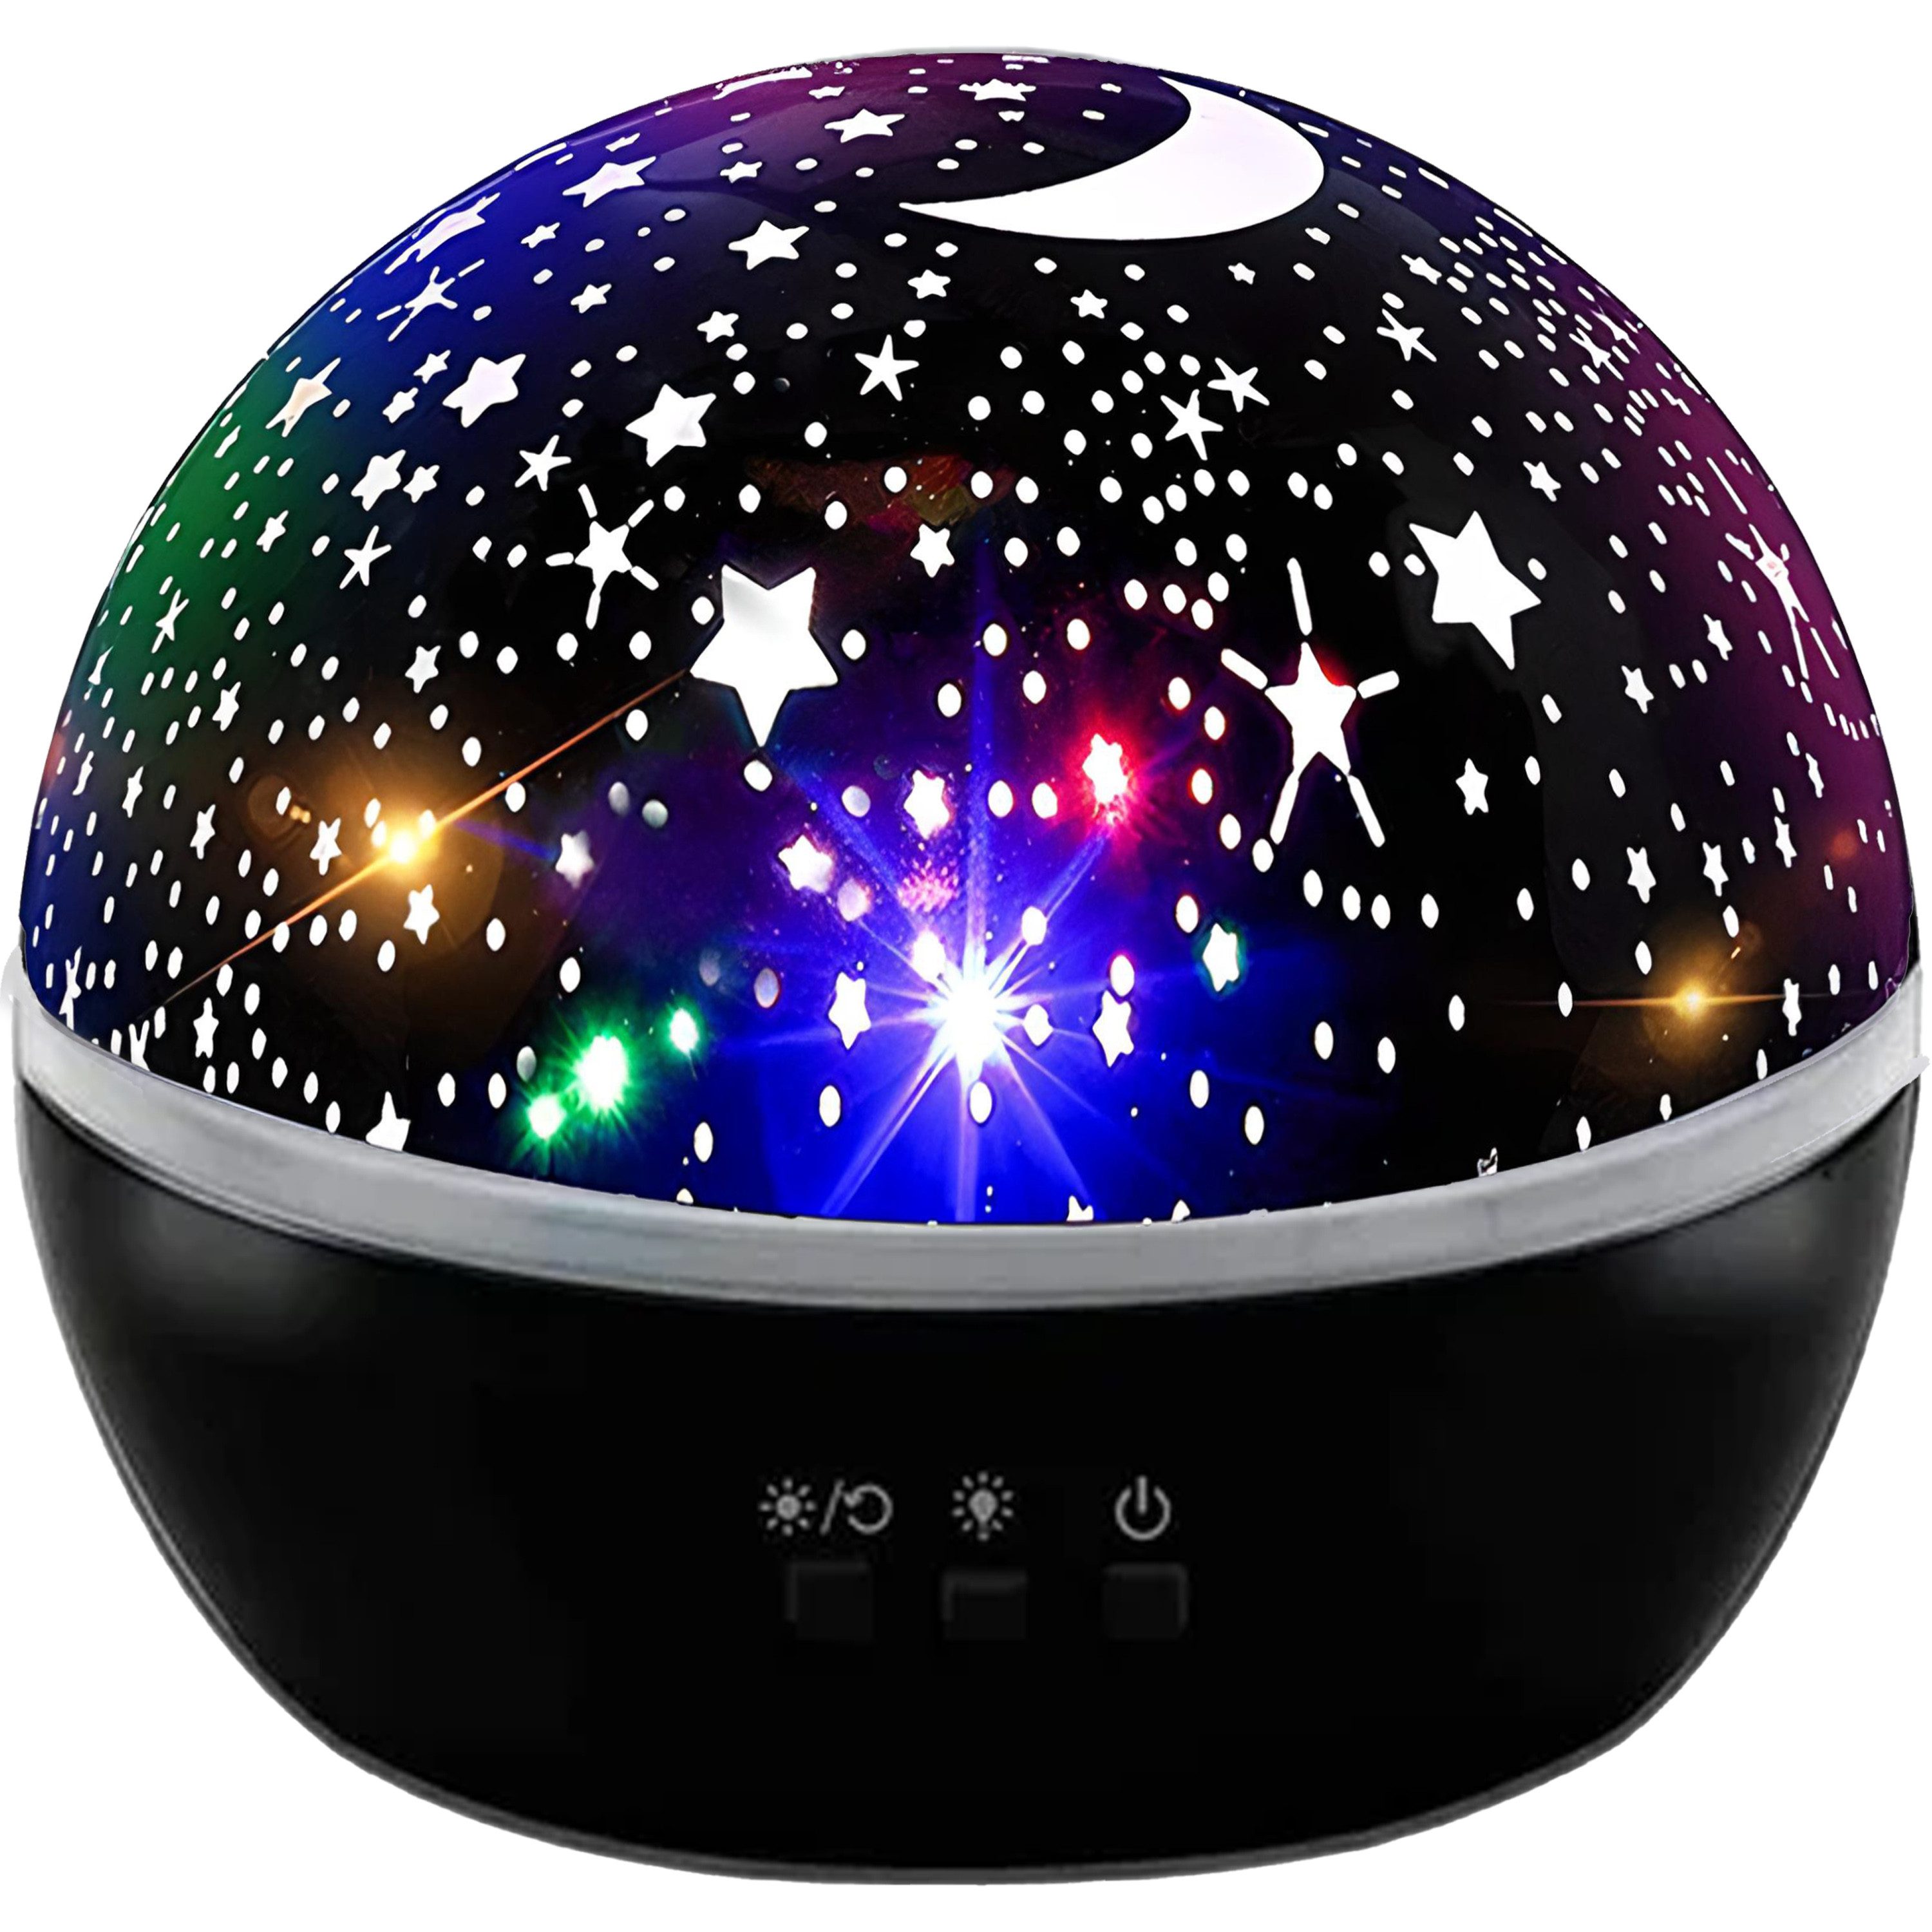 Retoo LED Nachtlicht Projektor Lampe Nachtlicht Galaxy Star Starry Stern USB, Mehrere Beleuchtungsmodi, Perfekt für Kinder, Stilvolles Design